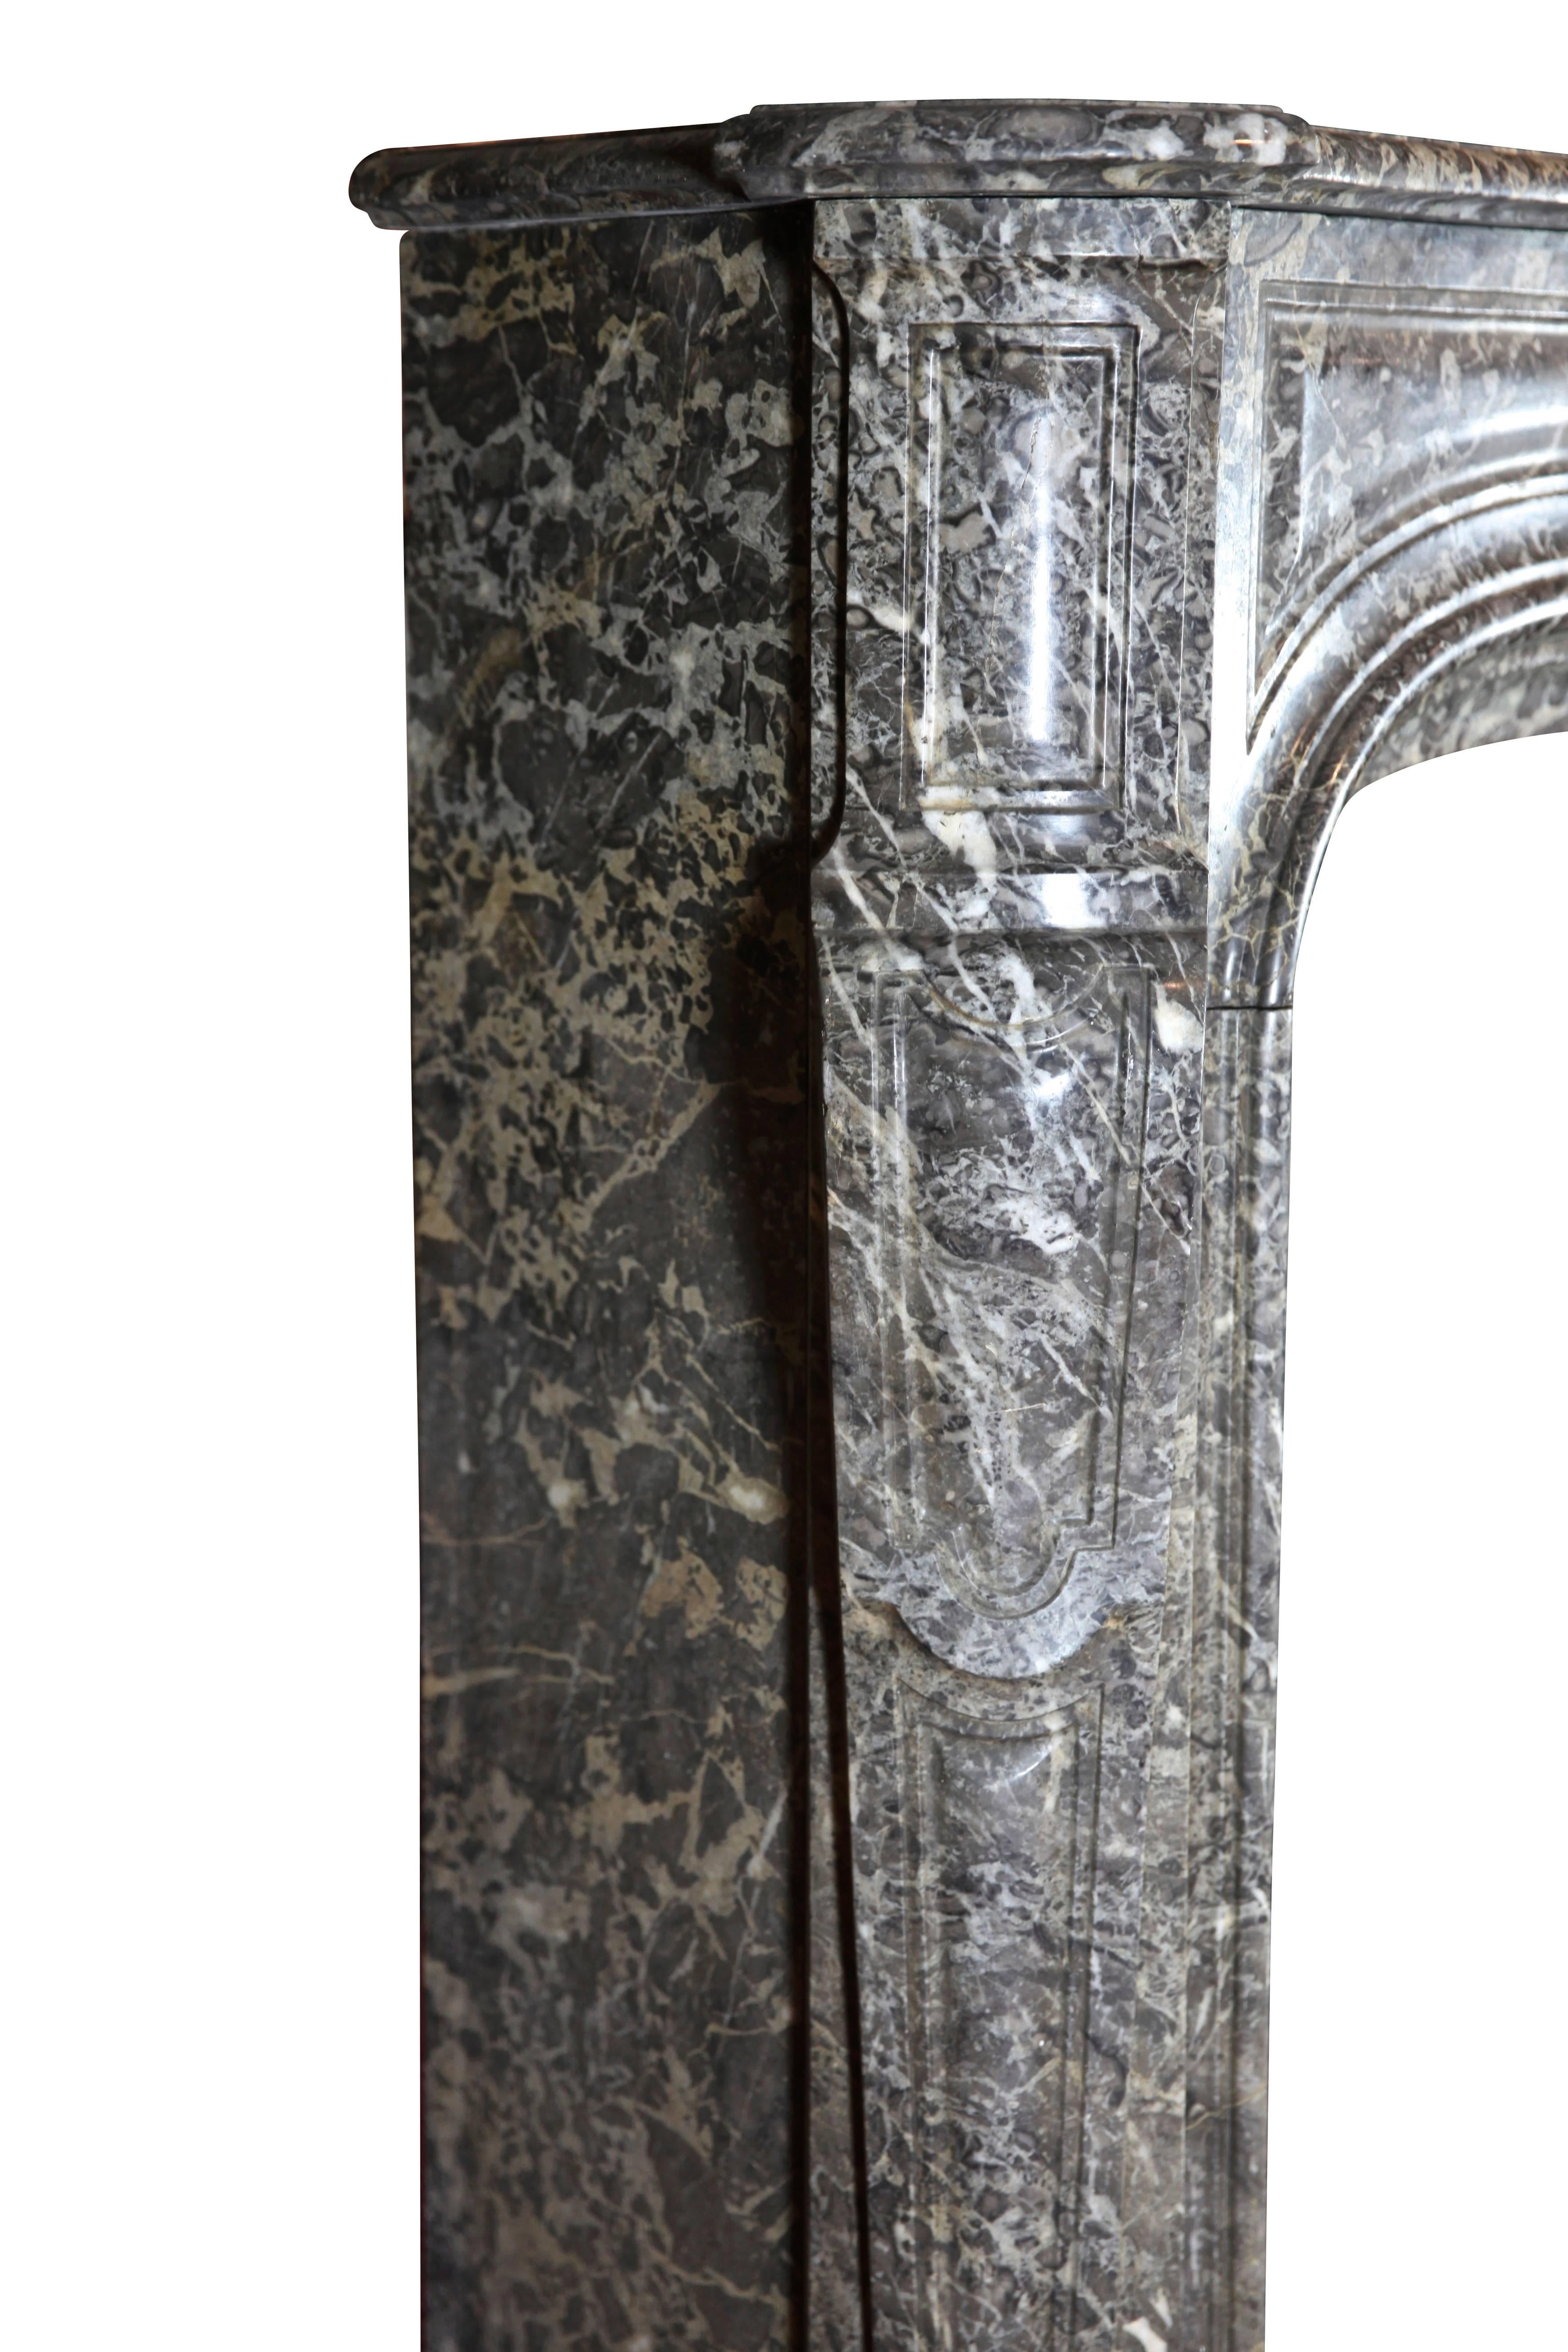 Forte cheminée d'époque Régence du XVIIIe siècle en marbre Gris St Anne belge. Cette pièce a été installée à l'origine dans une pièce lambrissée de Malines, une ville d'importance historique en Belgique. 
Mesures : 
190 cm EW 74,80